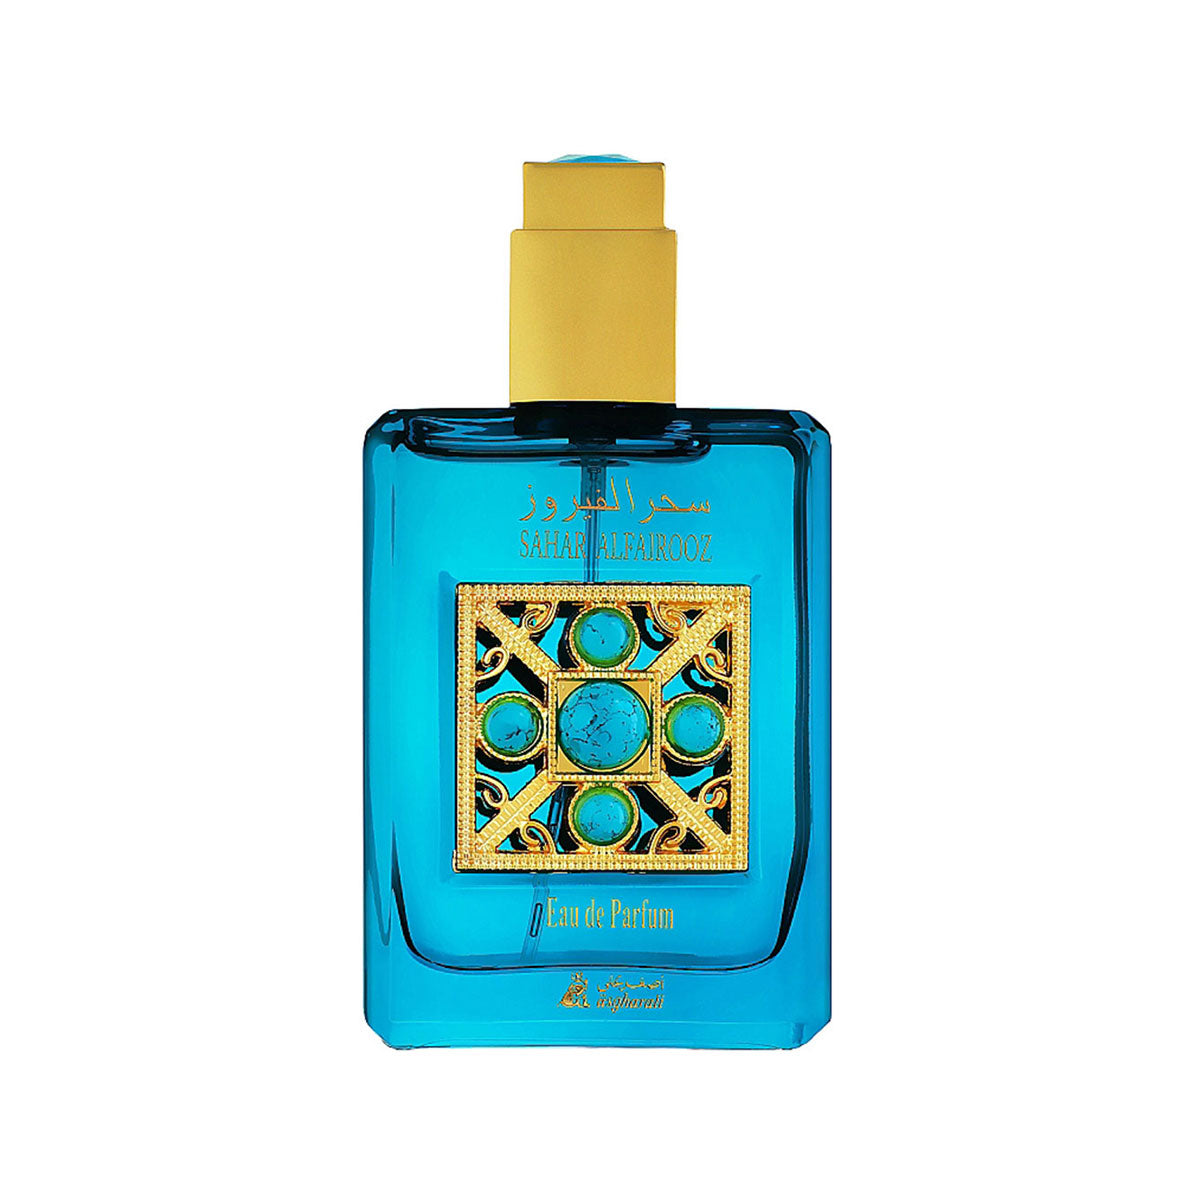 Sahar Al Fairooz Asgharali Perfumes, For Her 45 ml Eau de Parfum